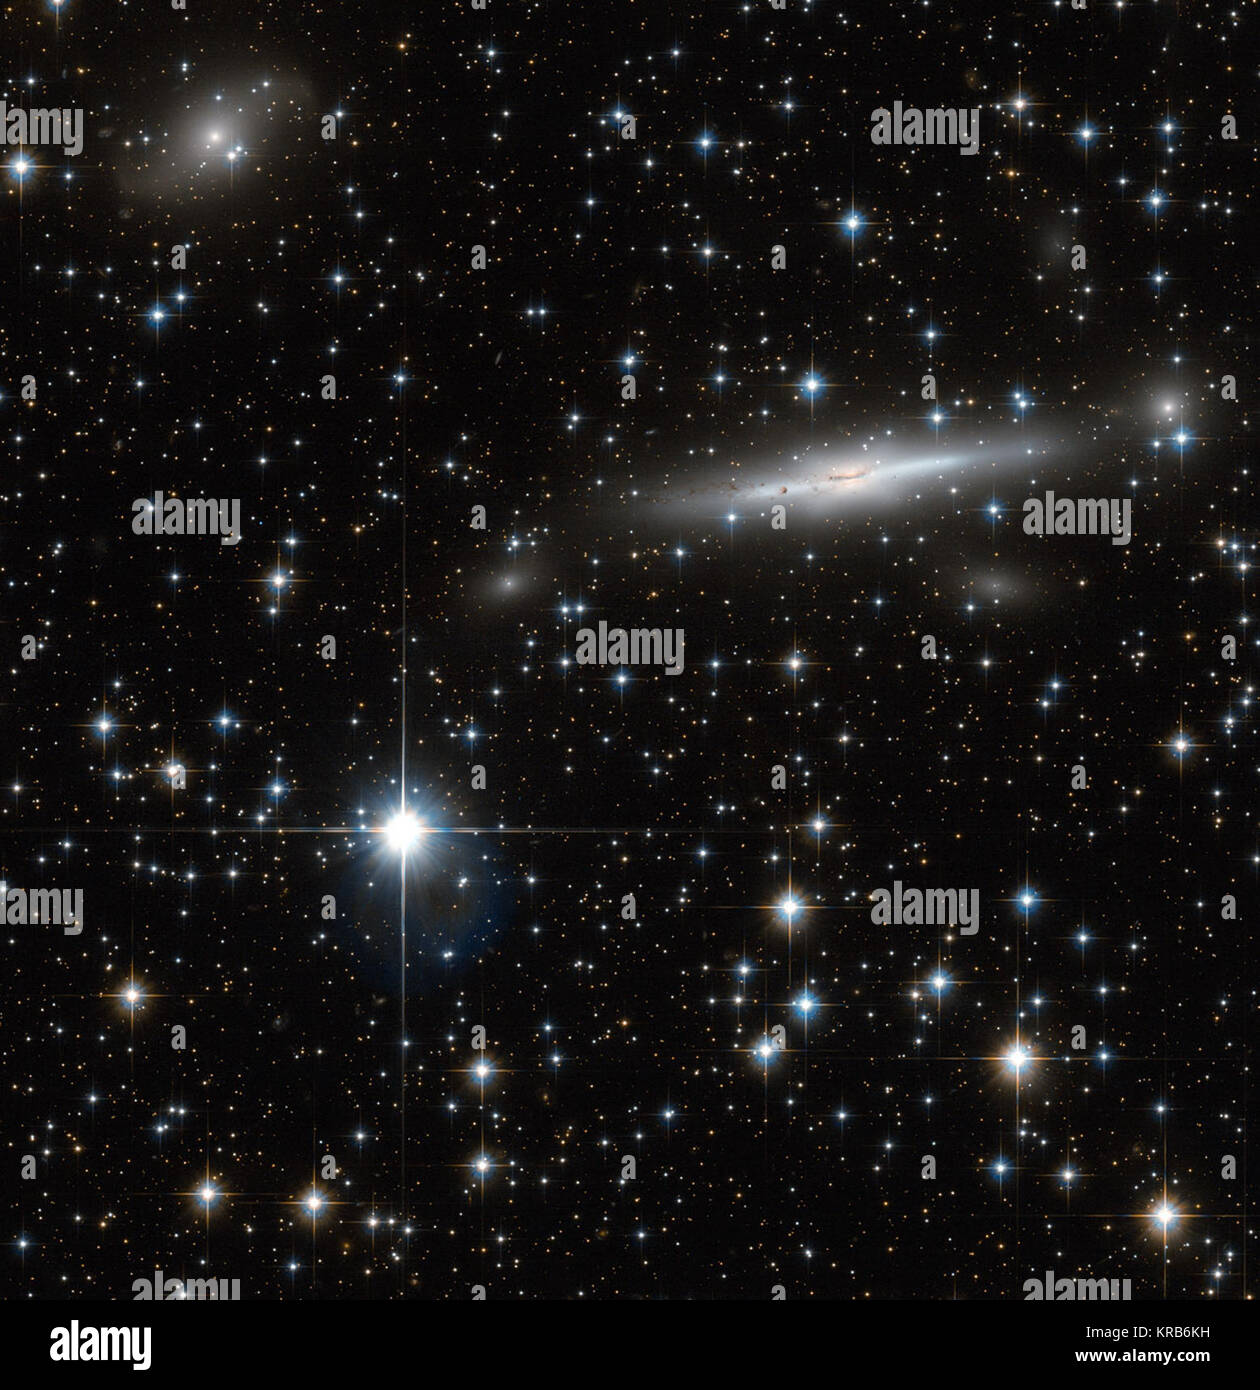 Un patch d'occupation de l'espace a été capturée dans cette image de la NASA/ESA Hubble Space Telescope. Dispersés avec de nombreuses étoiles proches, le domaine dispose également de nombreuses galaxies dans l'arrière-plan. Situé sur la frontière de Triangulum Australe (Le Triangle austral) et Norma (la place du charpentier), ce domaine couvre une partie de la Norma Cluster (Abell 3627) ainsi qu'une zone dense de notre galaxie, la Voie lactée. La Norma Cluster est le plus proche amas de galaxies massives à la Voie lactée, et se trouve à environ 220 millions d'années-lumière. L'énorme masse concentrée ici, et par conséquent, des gravitatio Banque D'Images